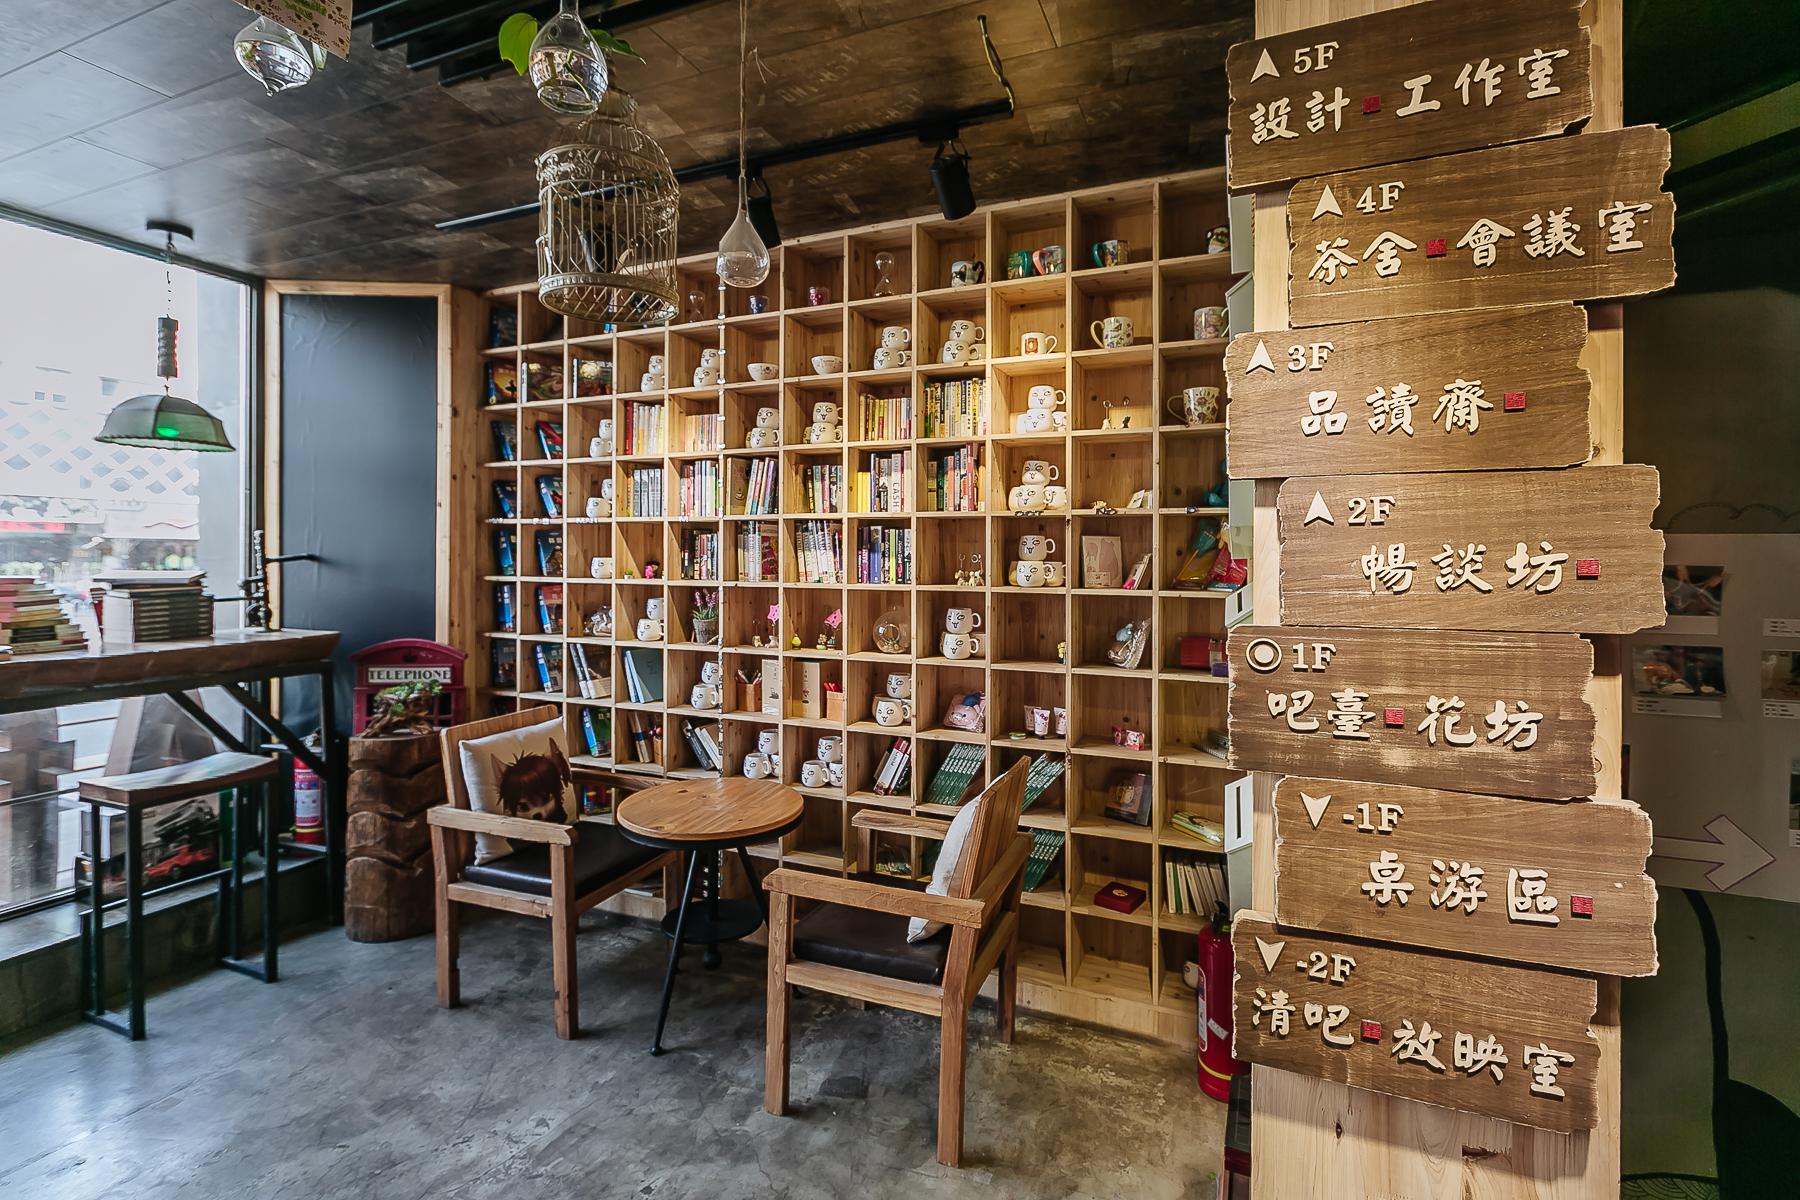 新中式书房 - 效果图交流区-建E室内设计网